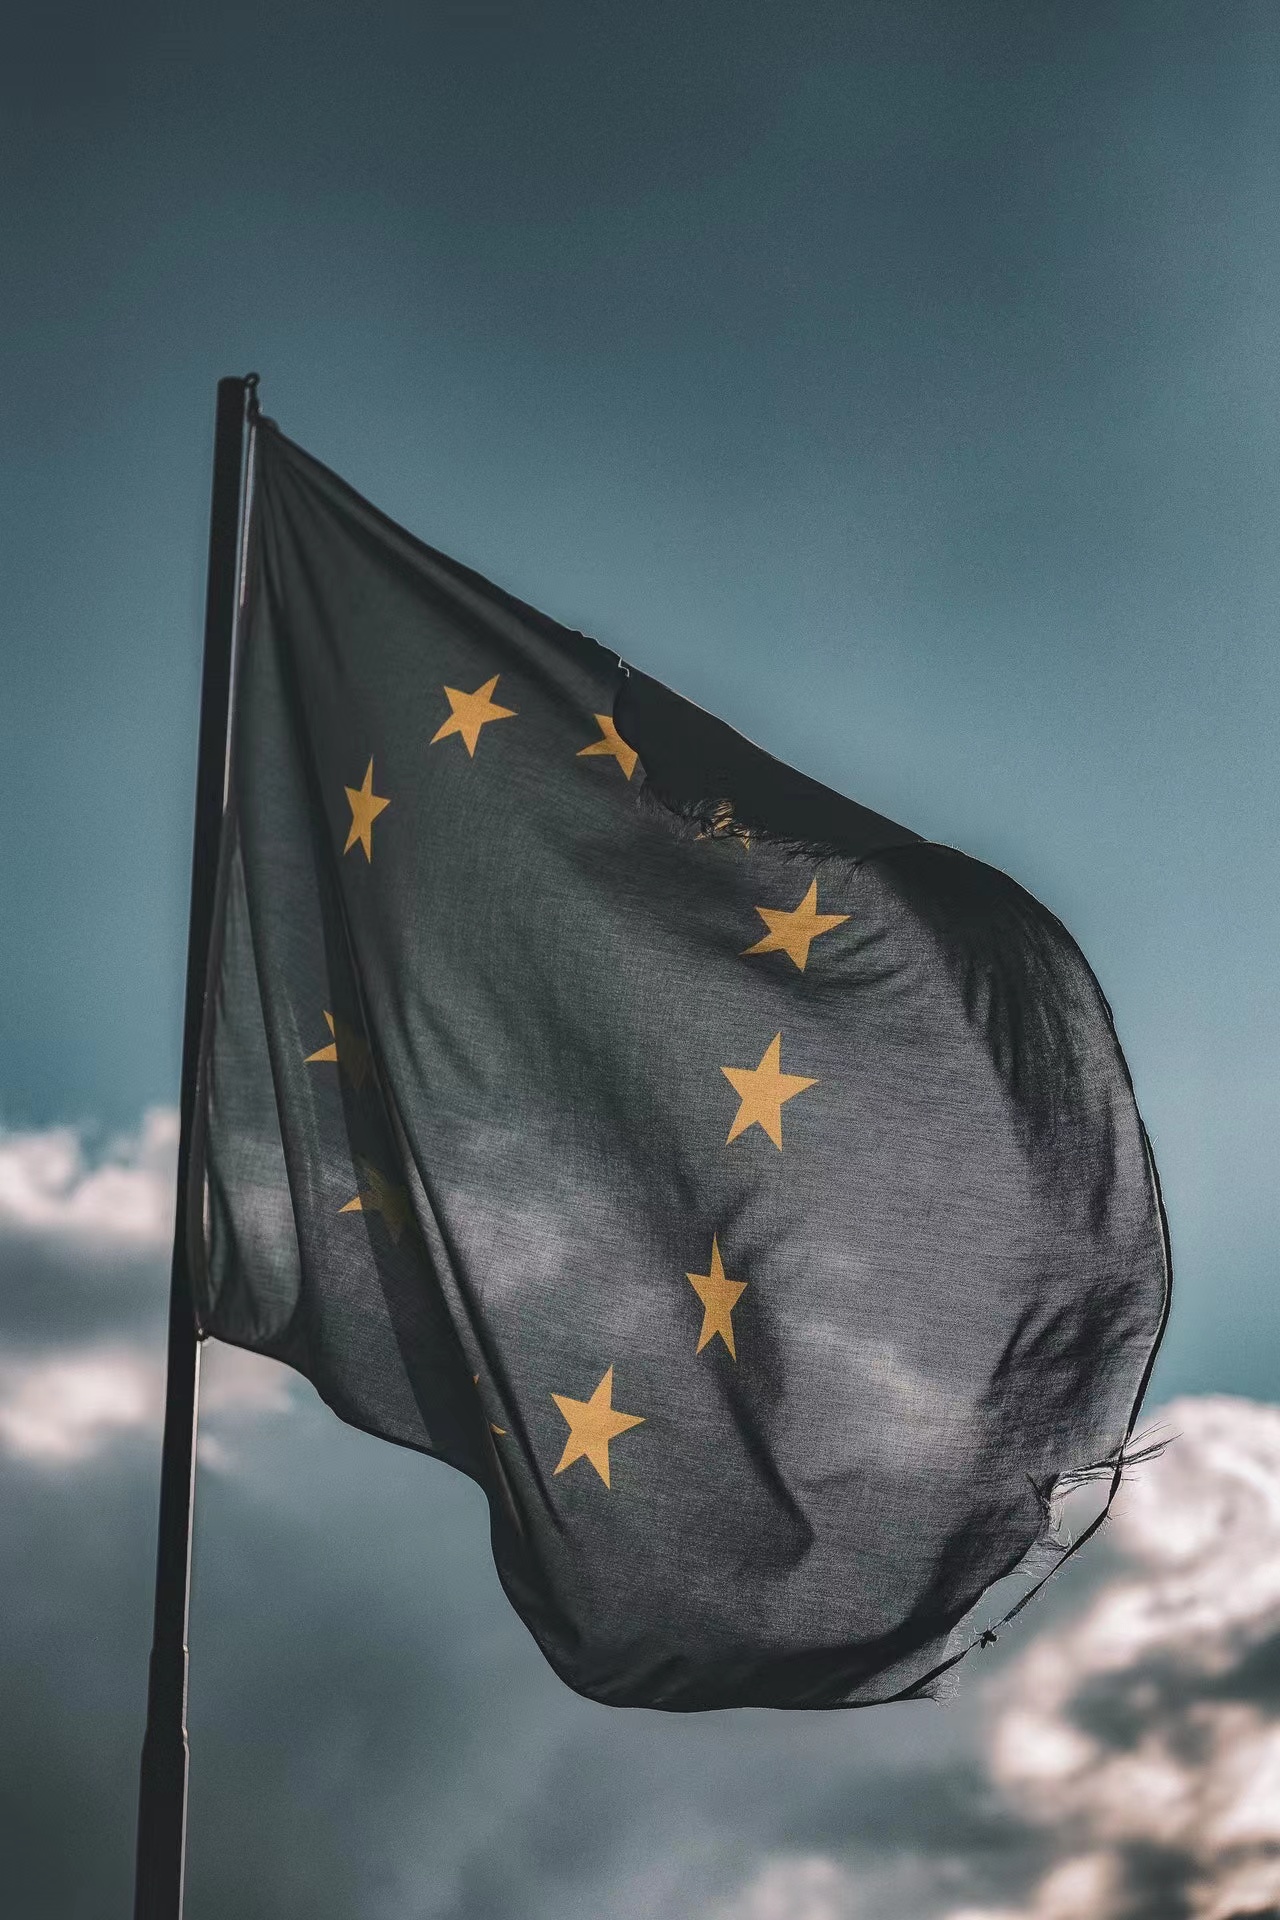 The european Union flag.